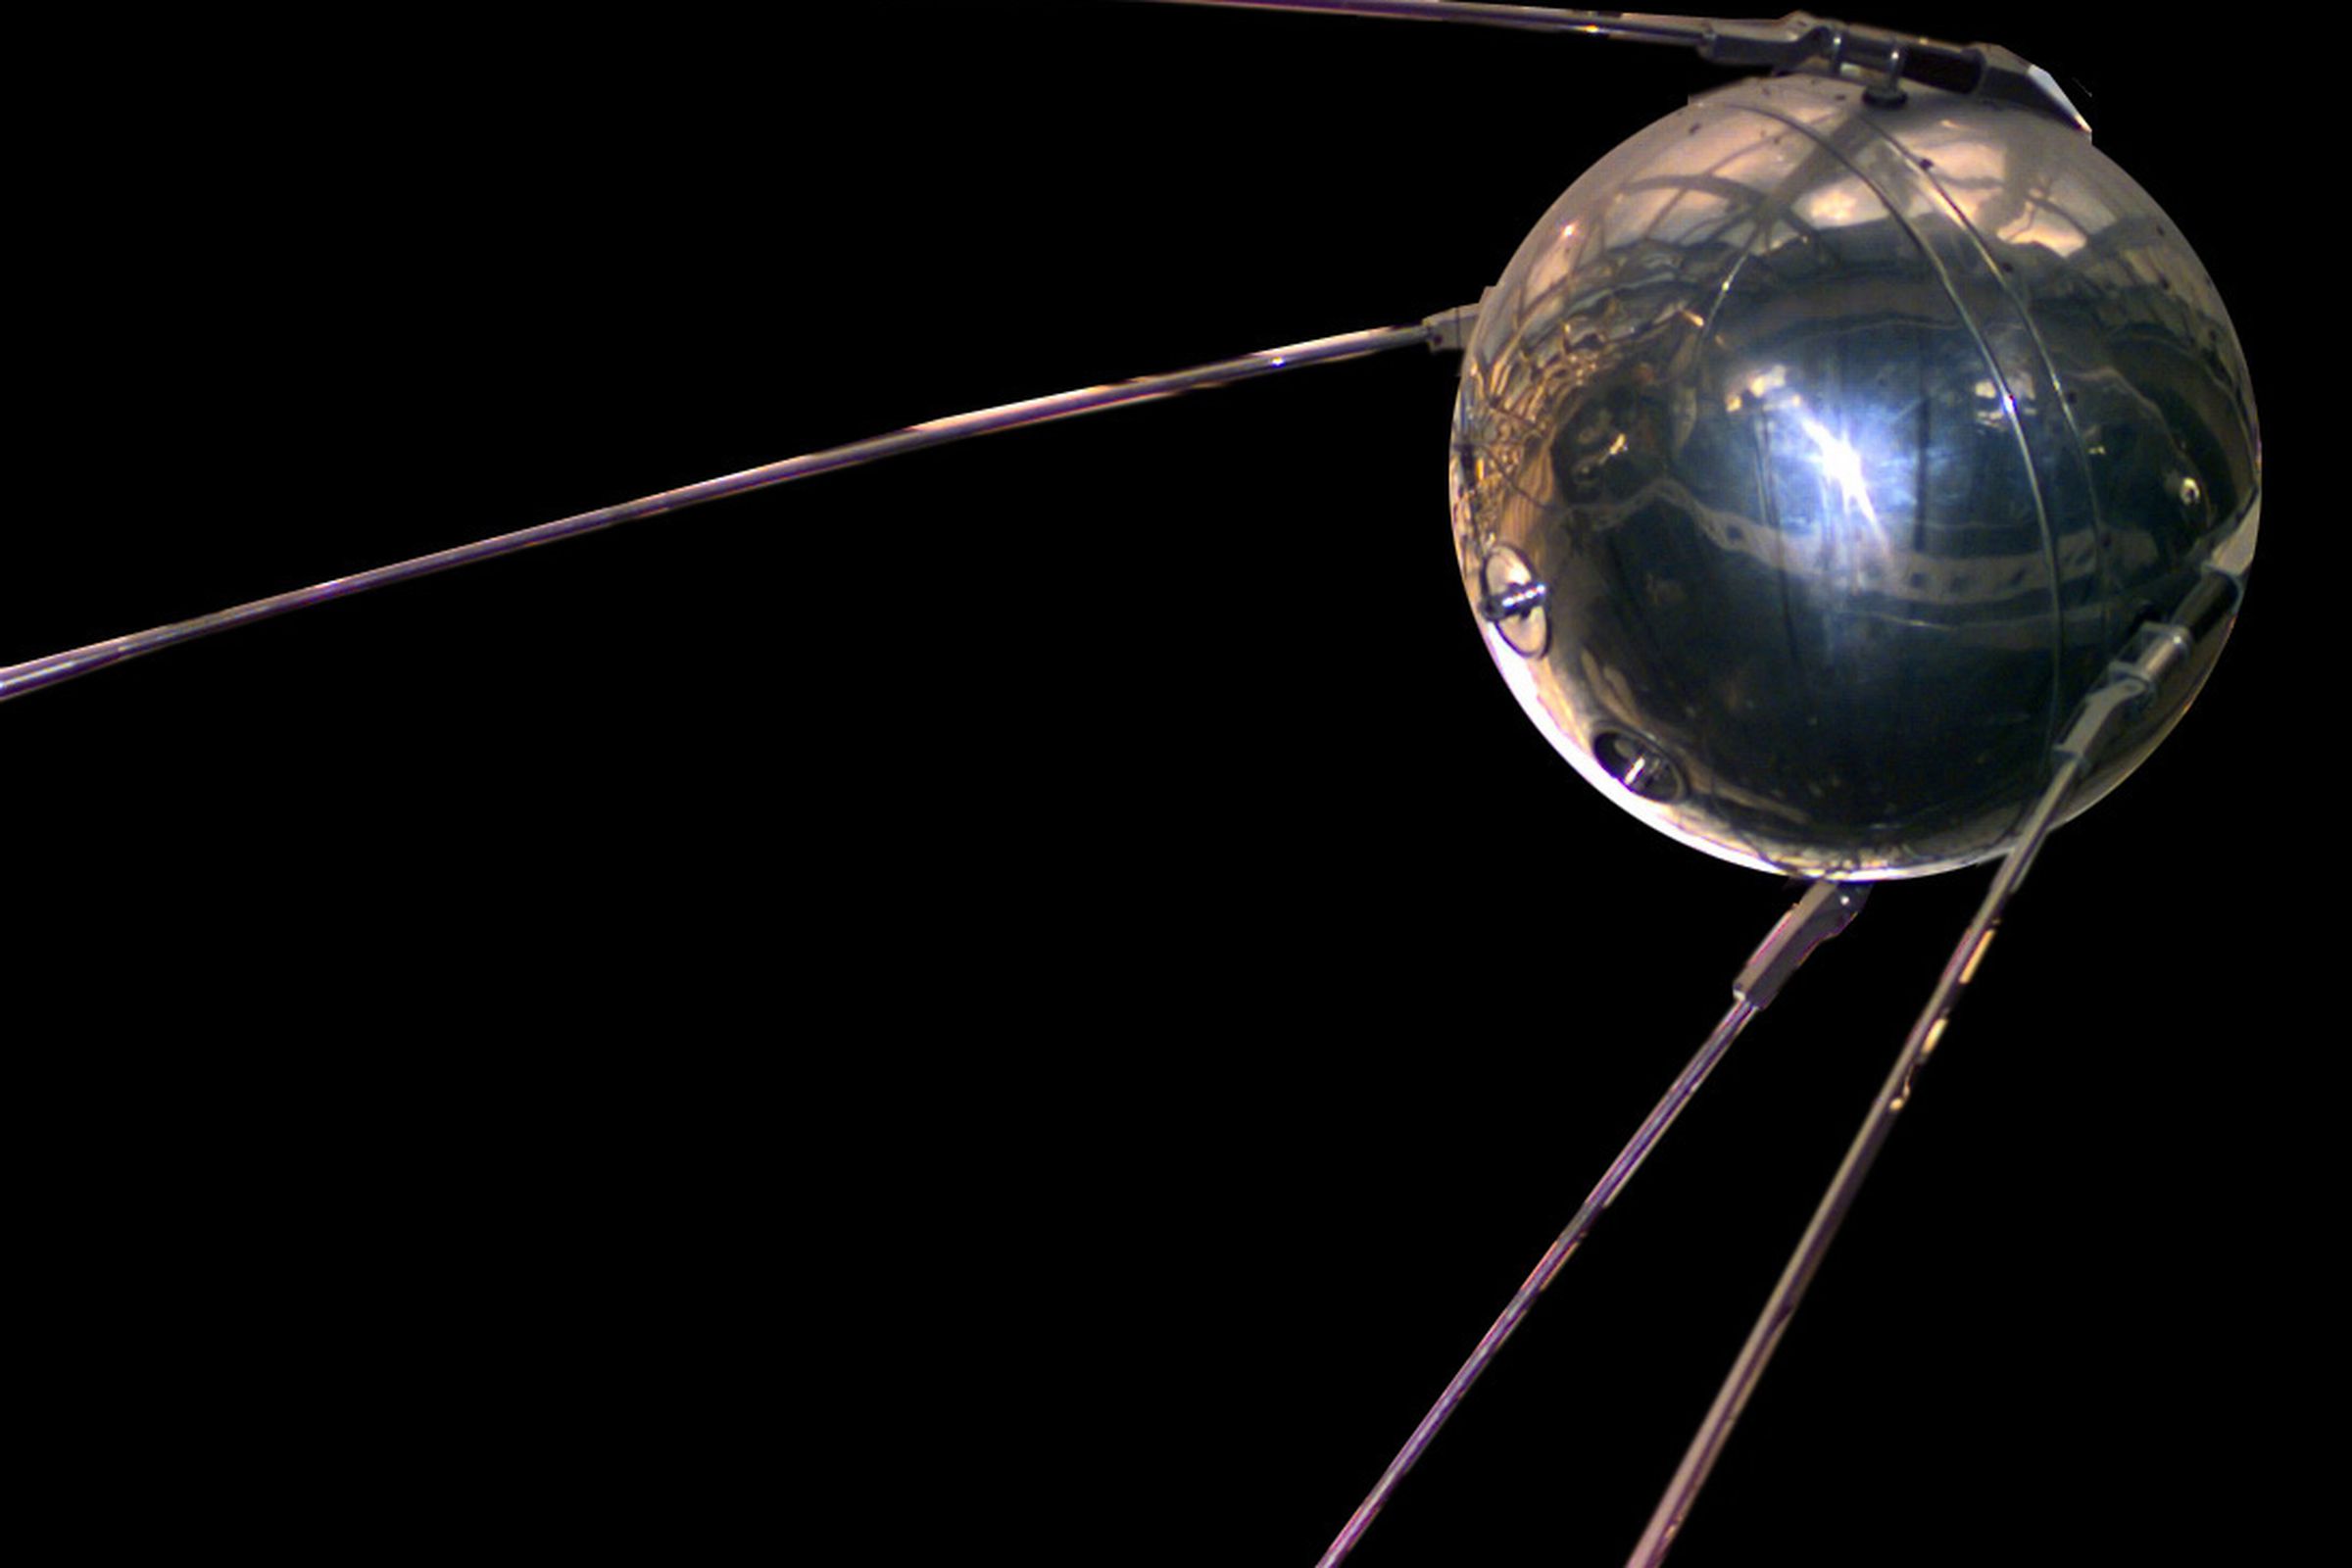 Sputnik replica (Wikimedia Commons)